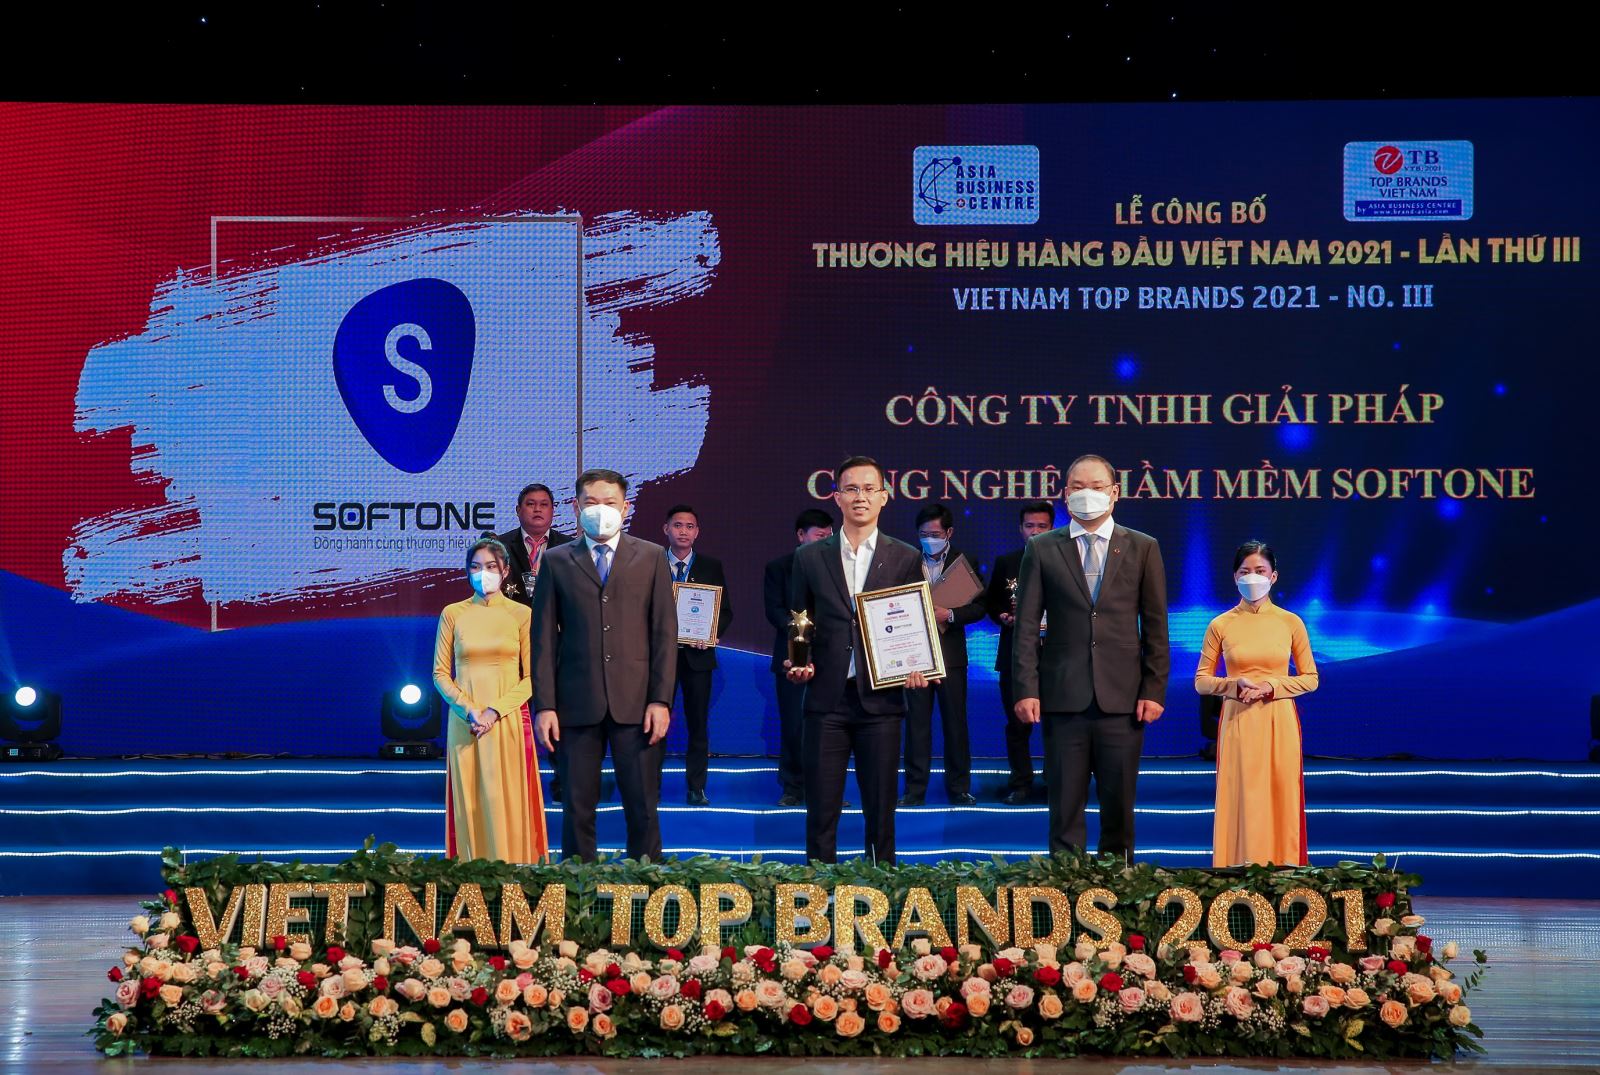 SoftOne vinh dự nhận giải thưởng Thương hiệu hàng đầu Việt Nam